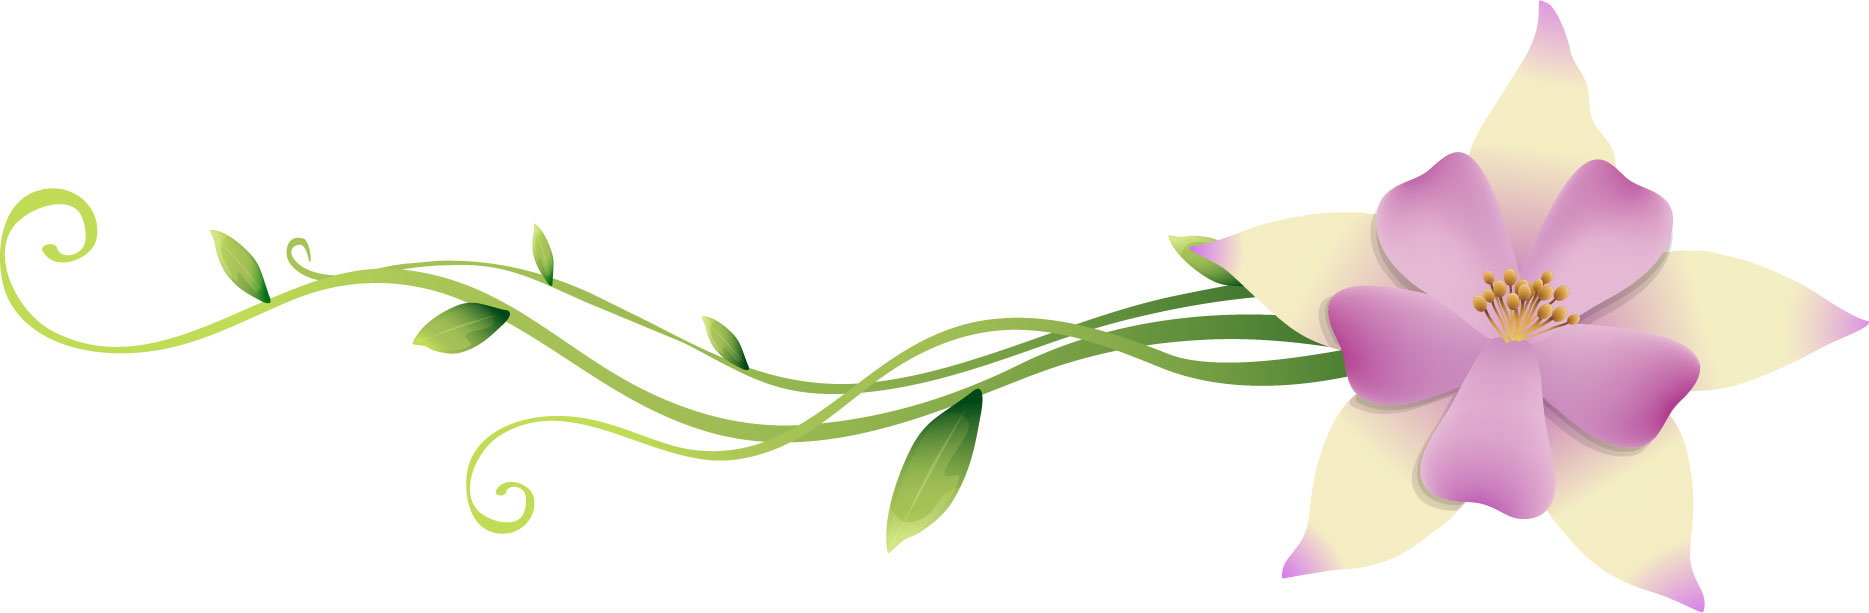 ポップでかわいい花のイラスト フリー素材 No 301 白紫 蔦 蔓 葉